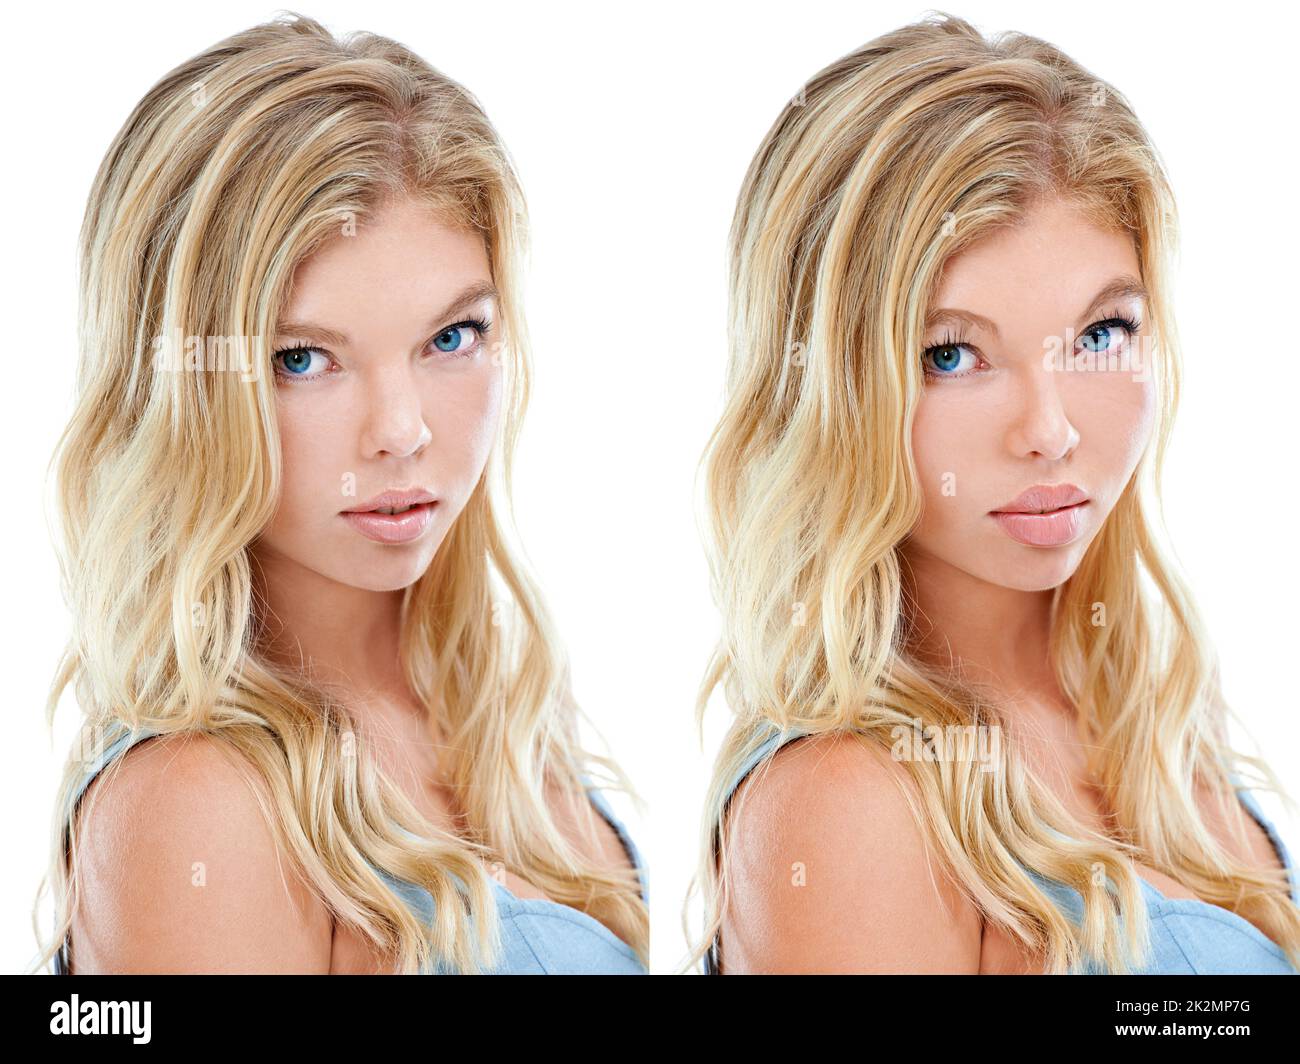 Wer sagte, Schönheit kann nicht gekauft werden. Komparatives Komposit-Bild einer jungen Frau vor und nach der plastischen Operation. Stockfoto